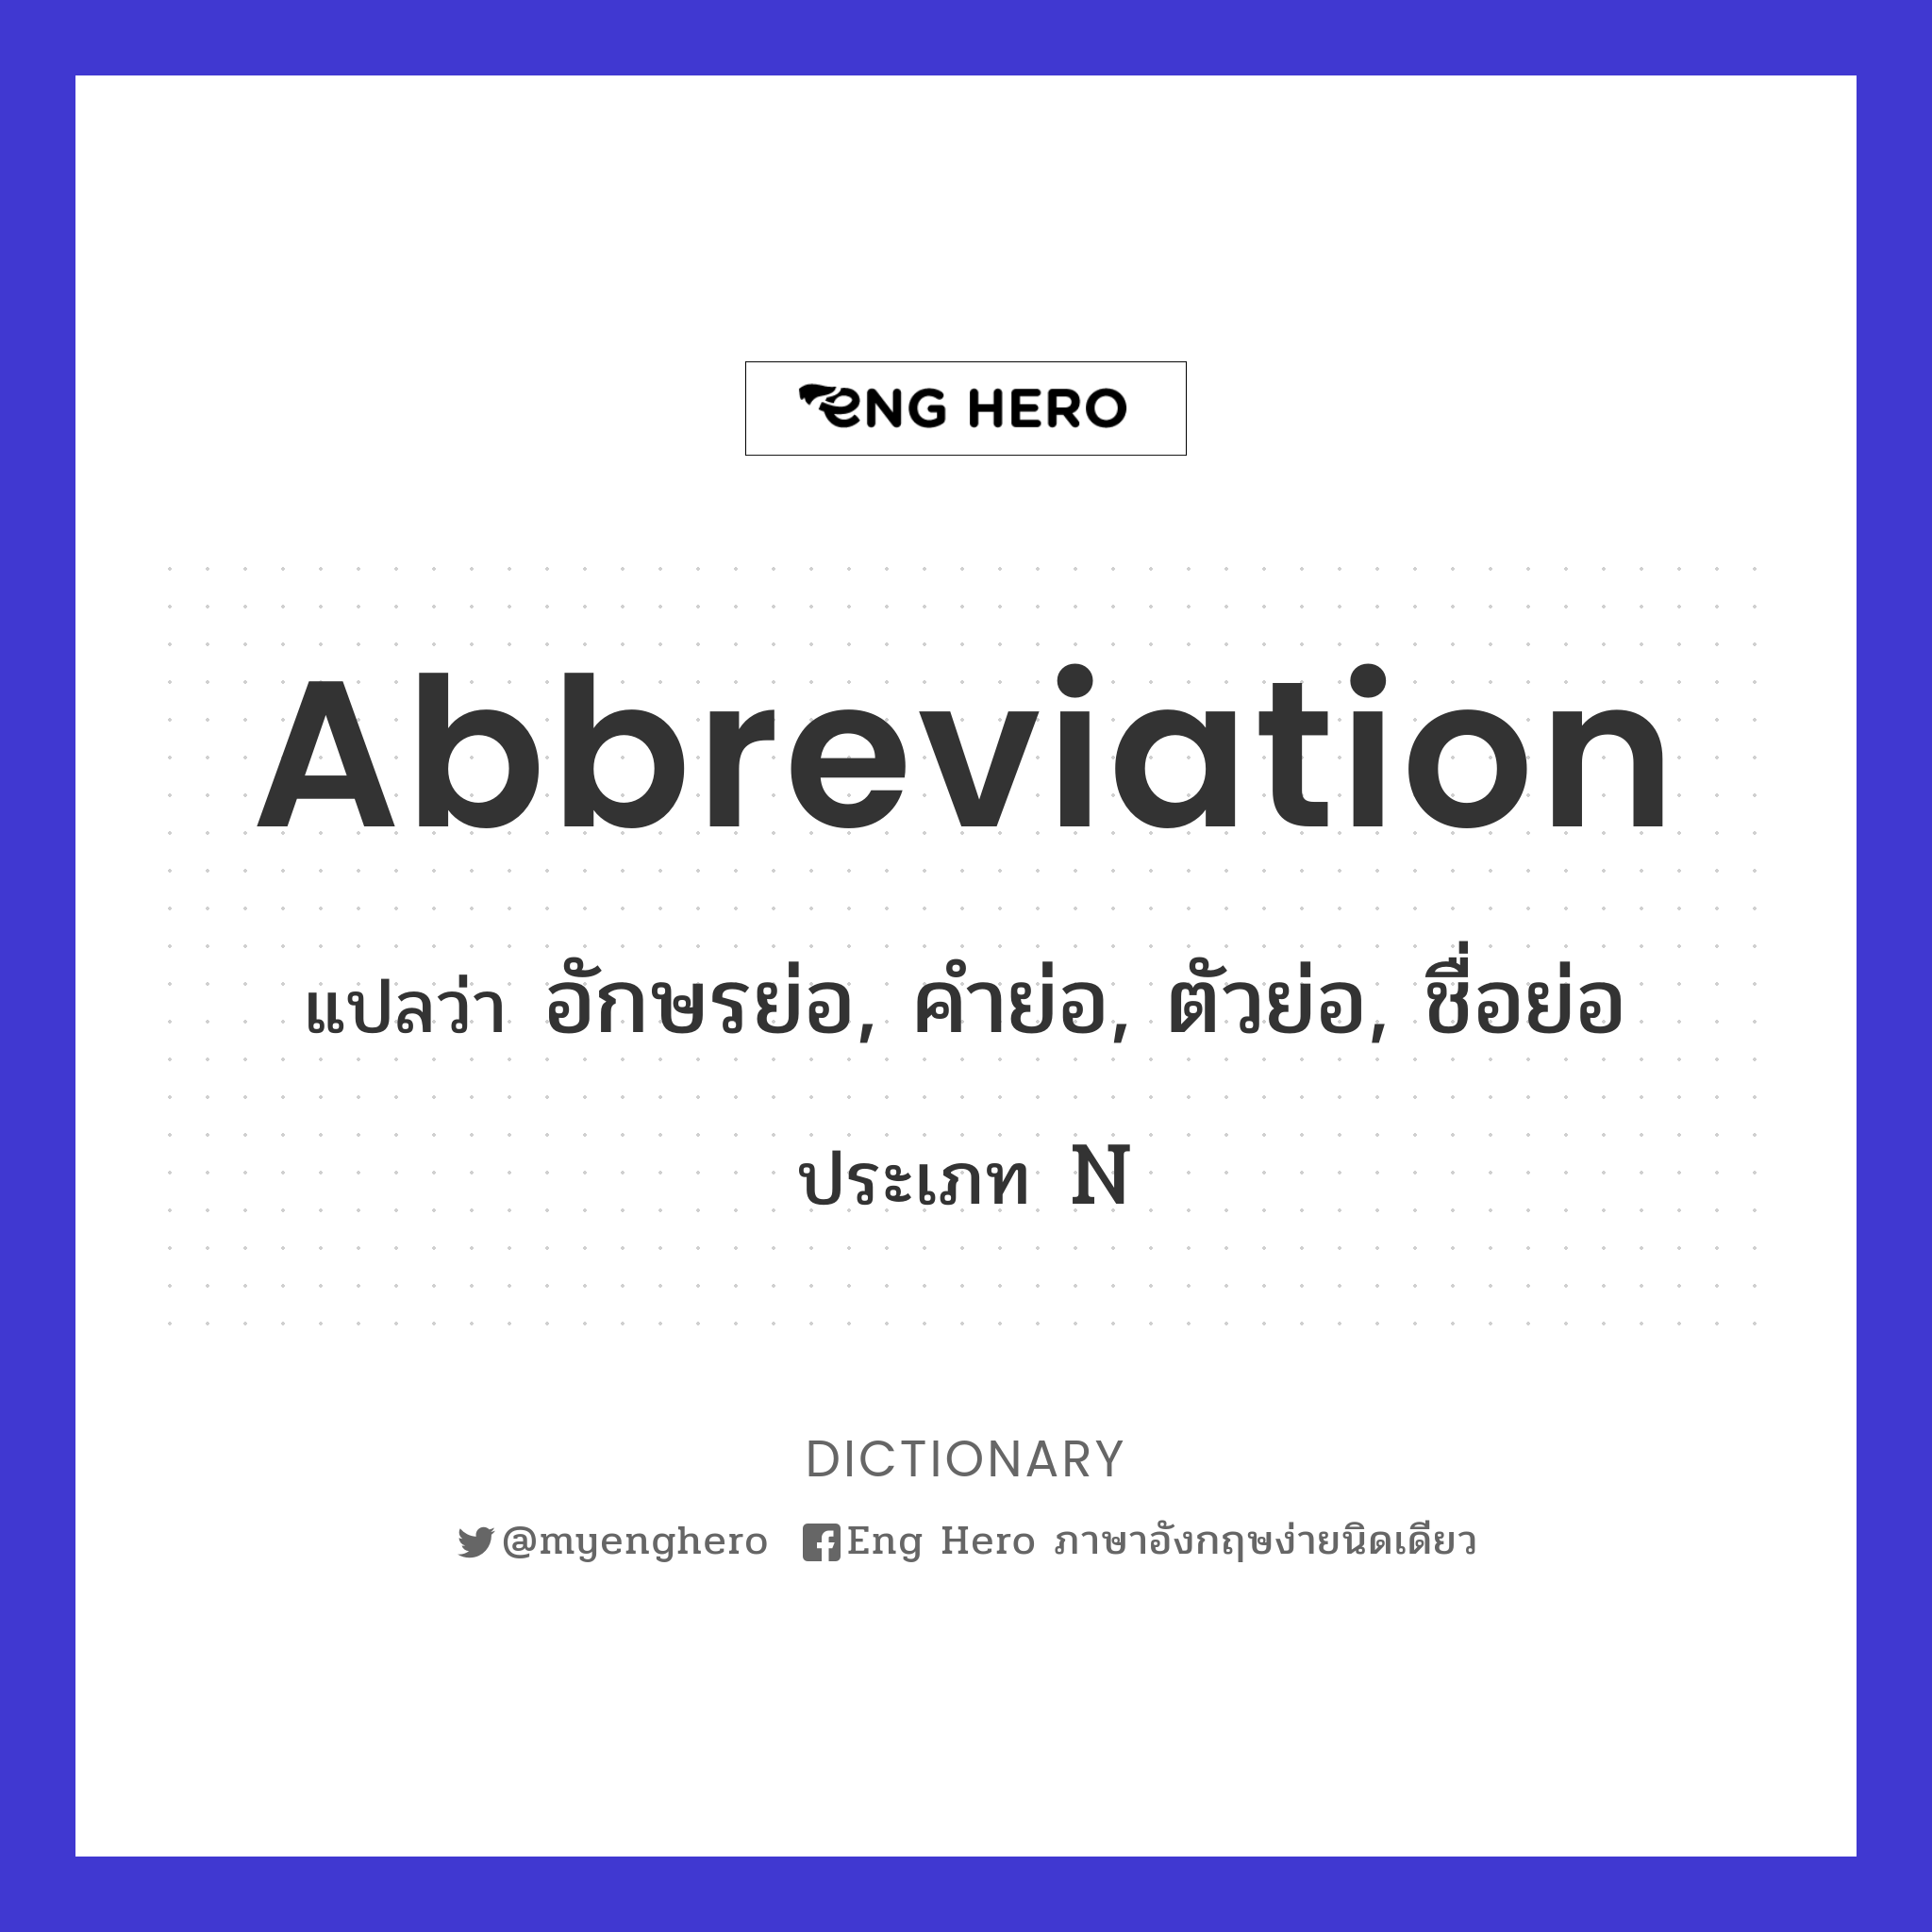 abbreviation